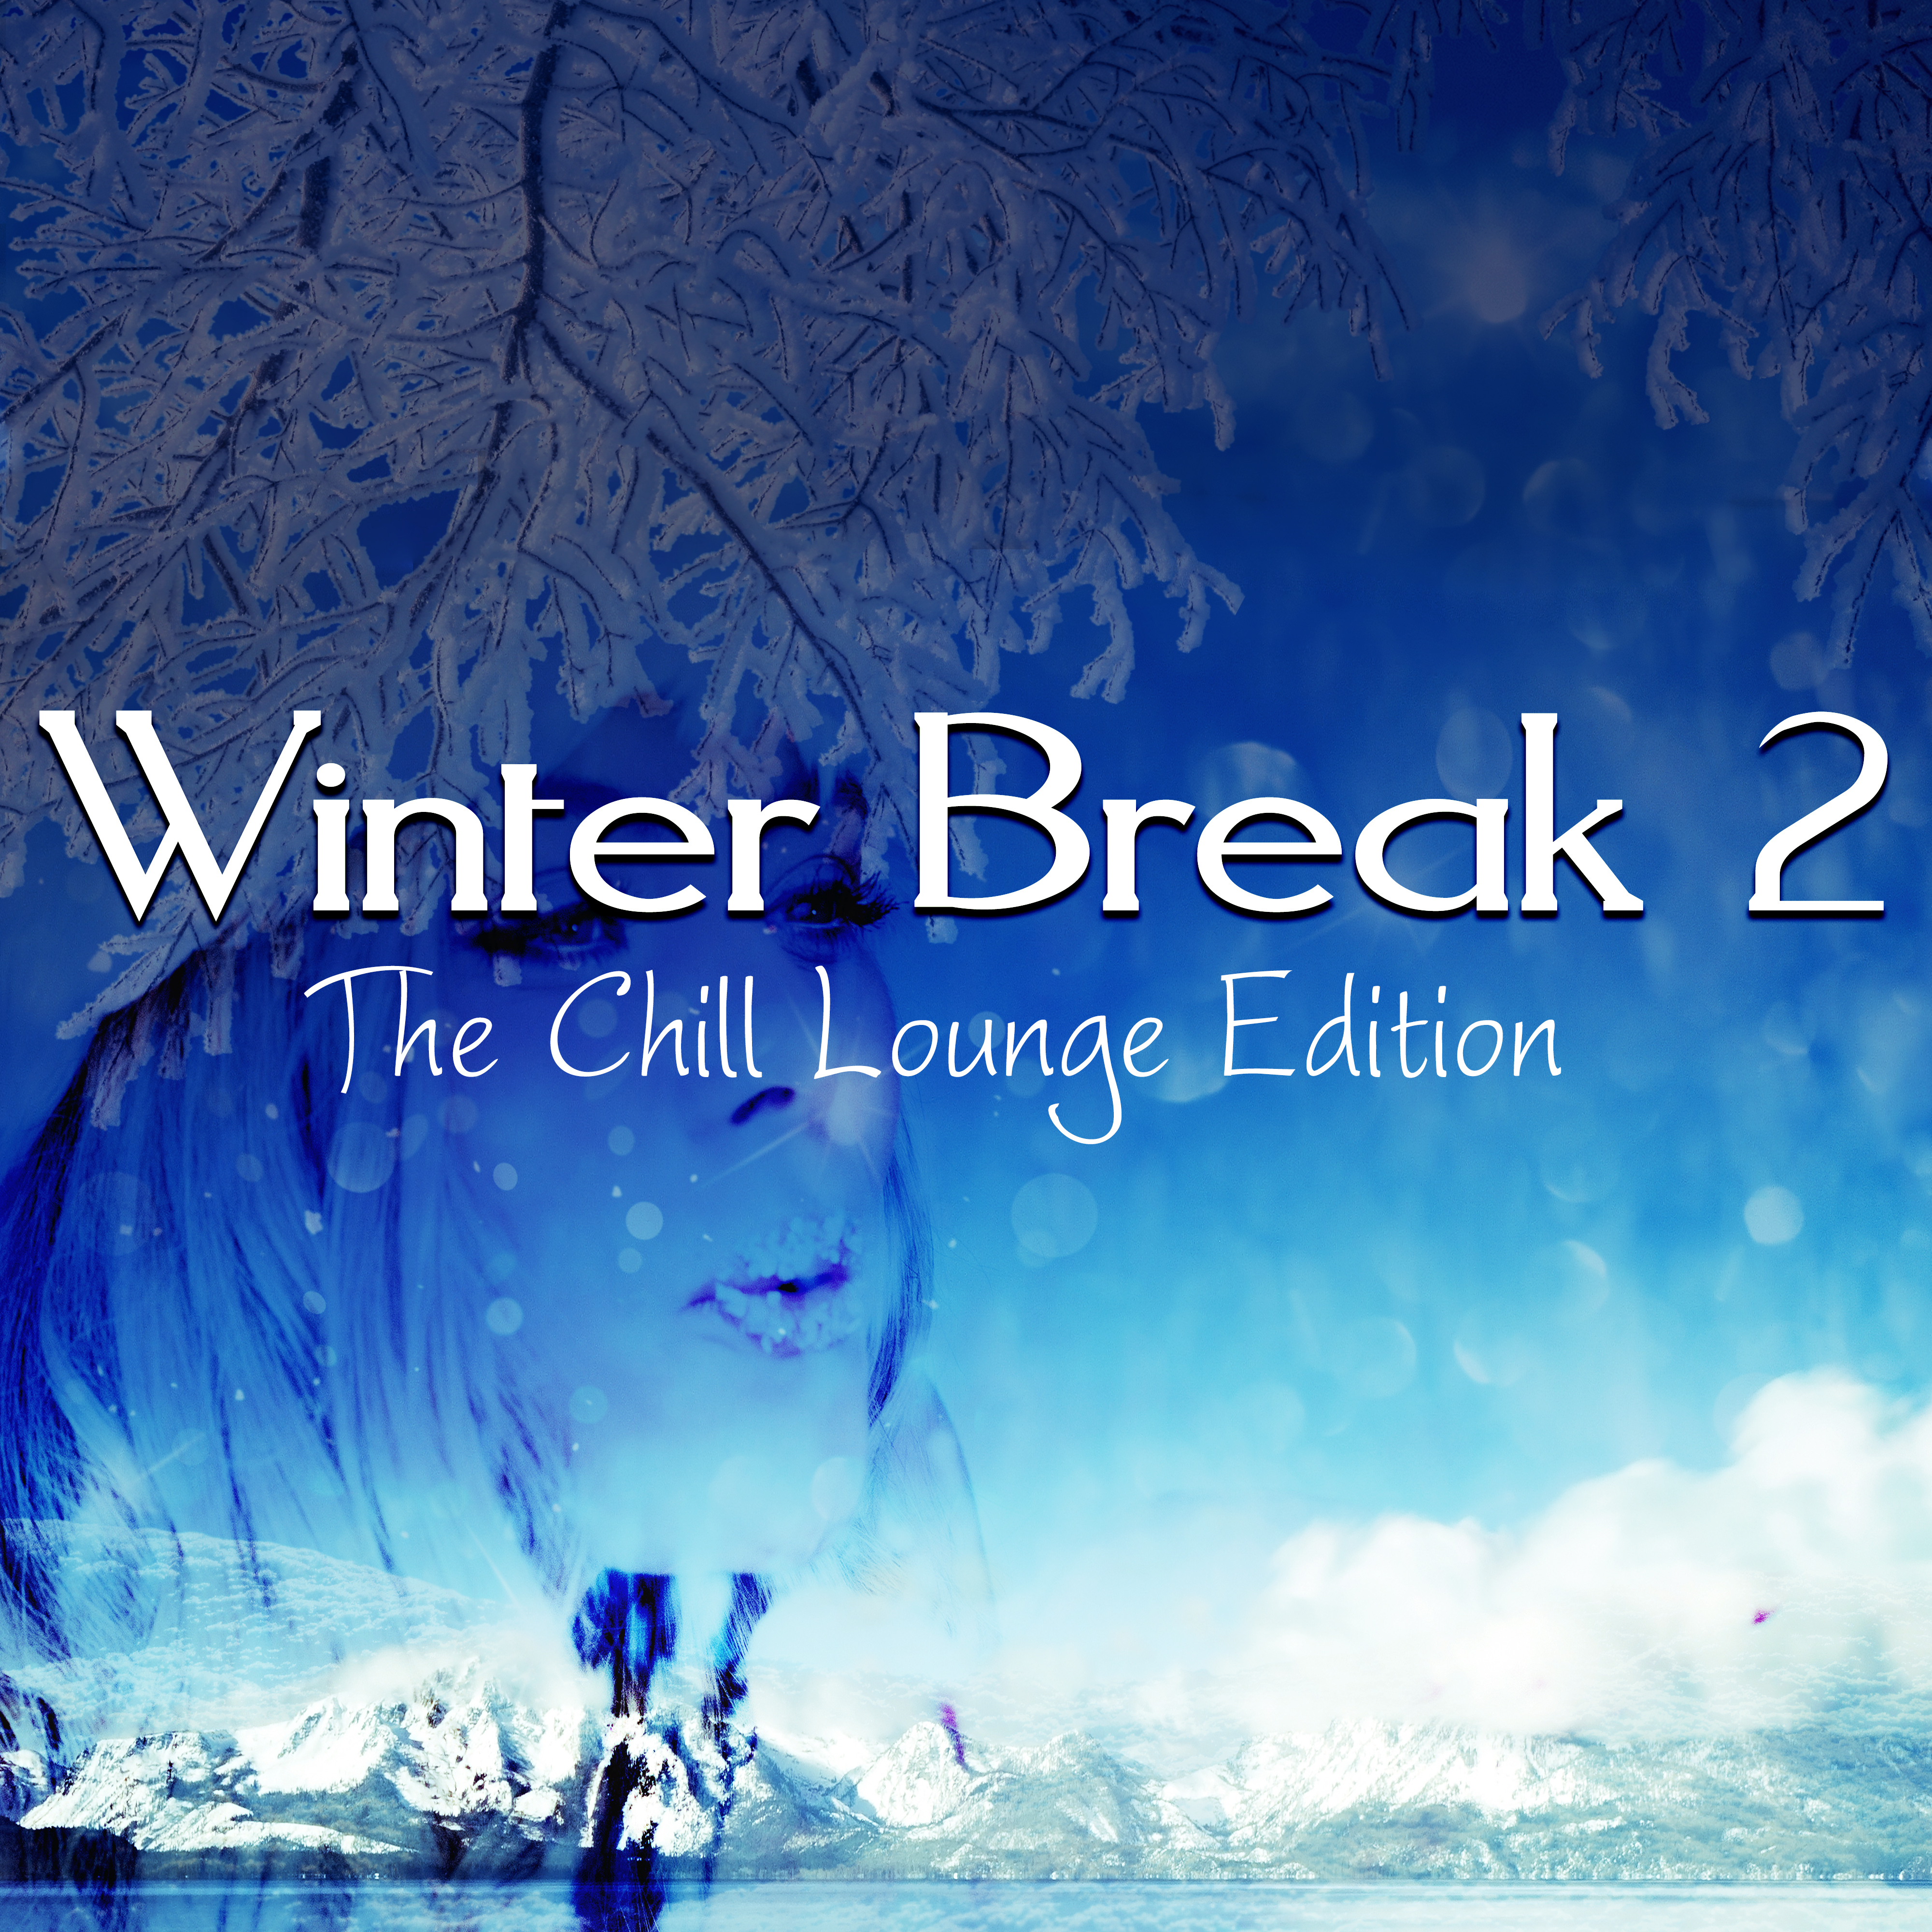 Winter Break 2 (The Chill Lounge Edition)